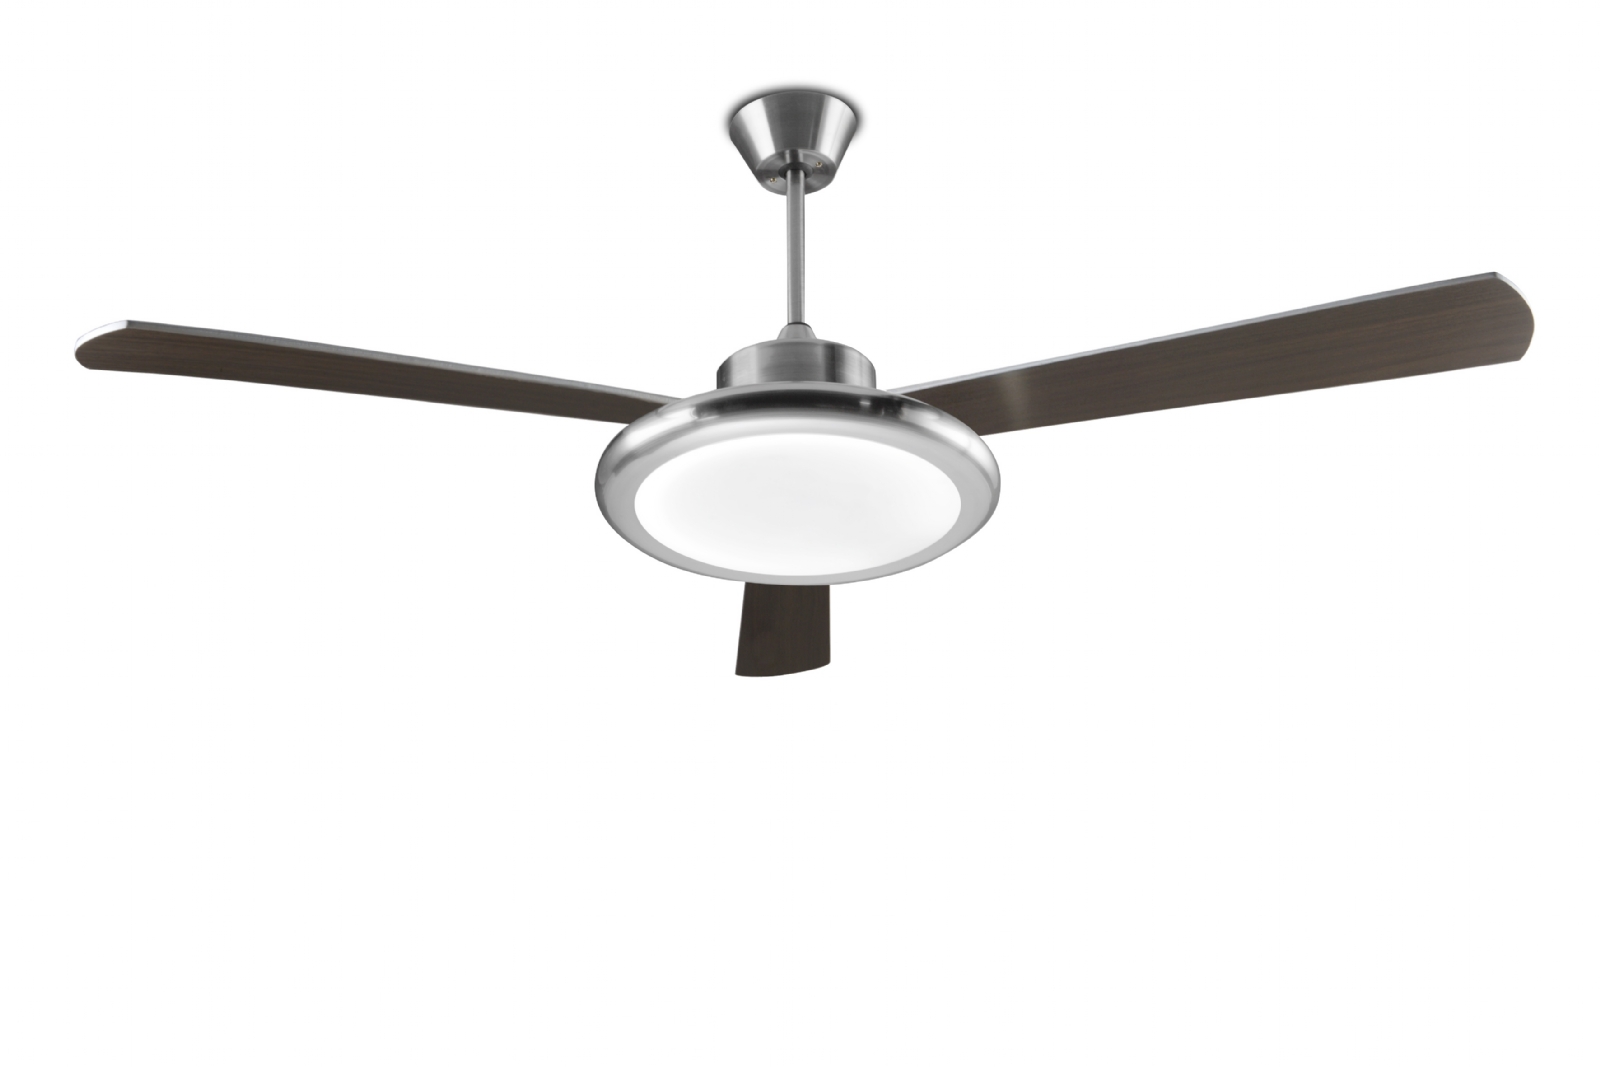 Heritage hugger ceiling fan light, home depot bathroom fans and lights ...